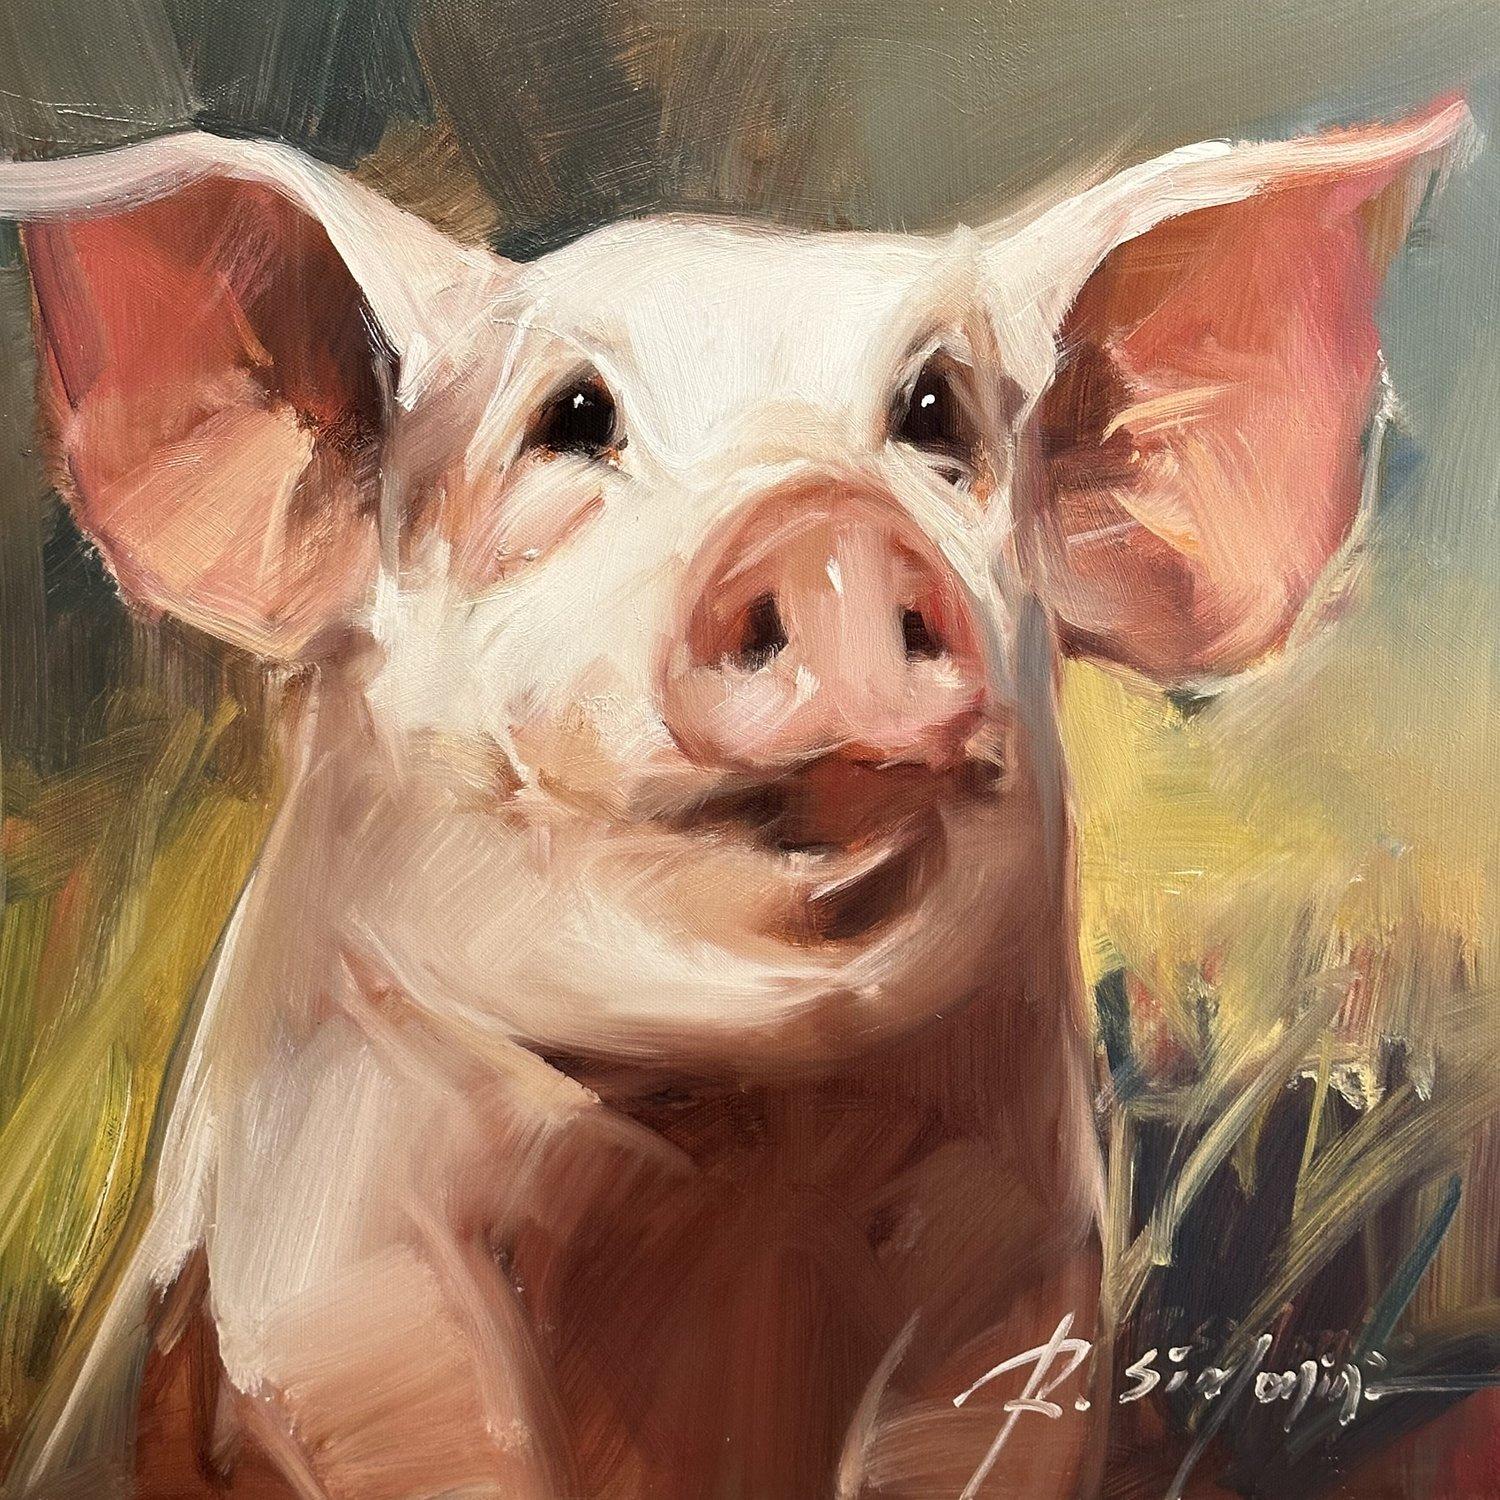 Cette peinture de l'artiste Ray SIMONINI intitulée "Miranda" est une peinture à l'huile sur toile 16x16 représentant un cochon rose sur un fond coloré. 

A propos de l'artiste :
SIMONINI est né en Chine en 1981. Il est intrigué par les illustrations